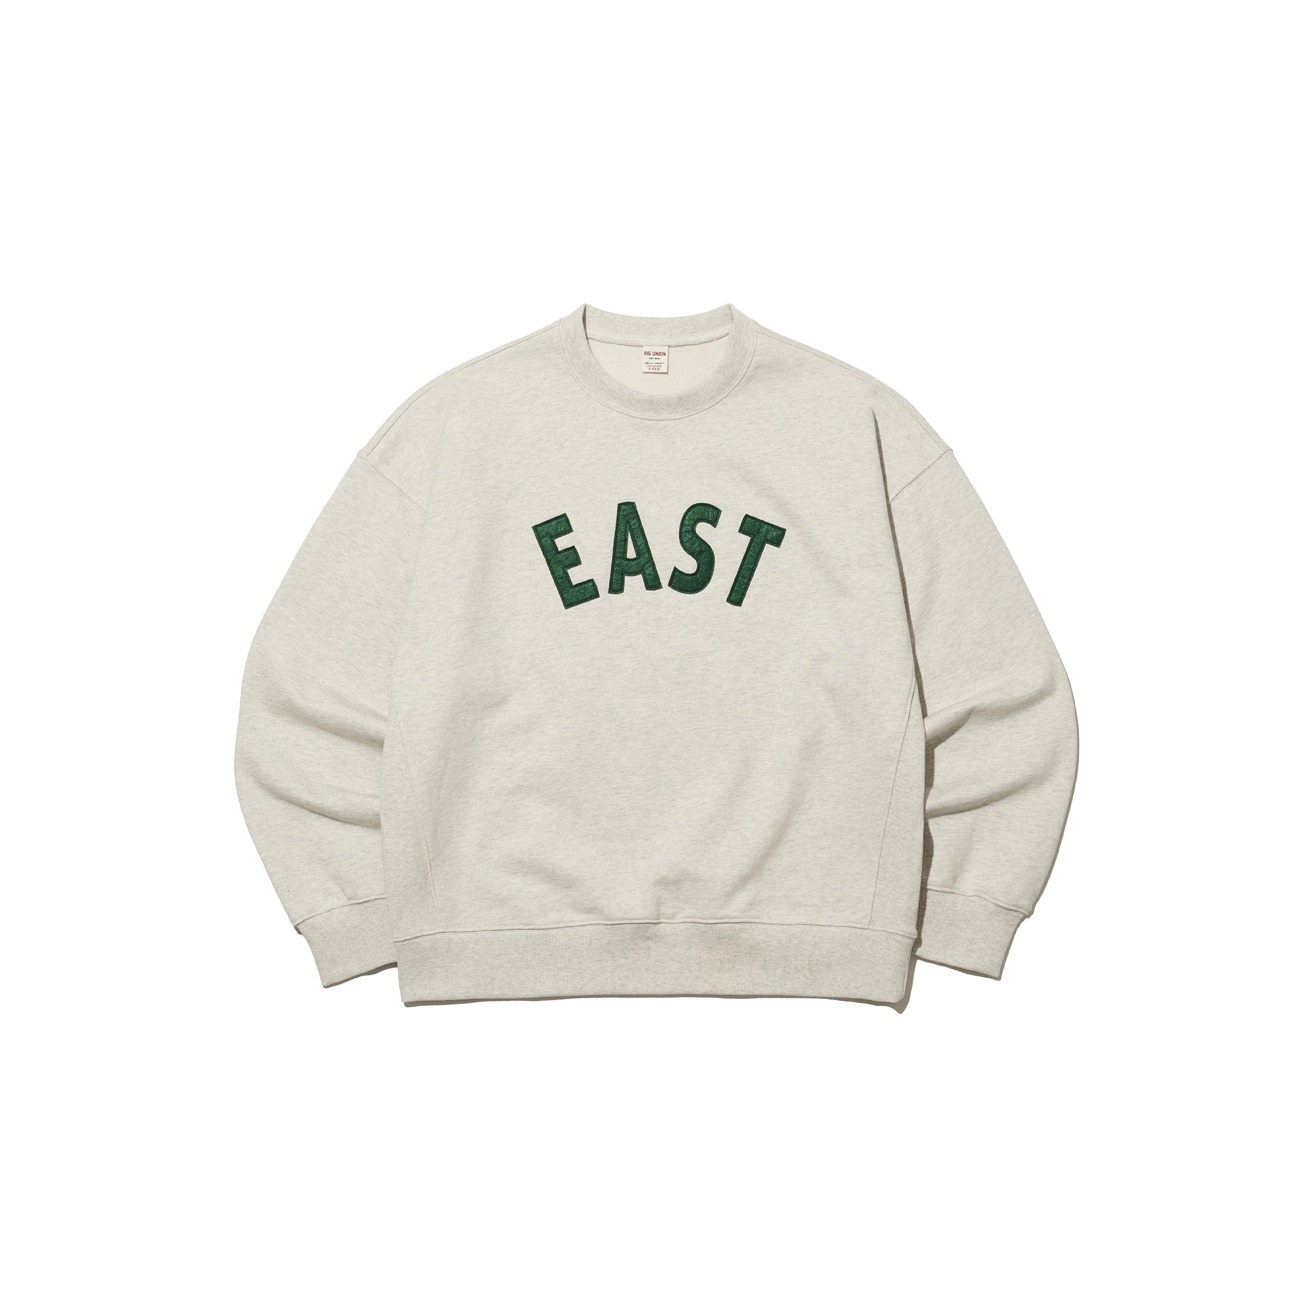 16oz East Sweatshirts